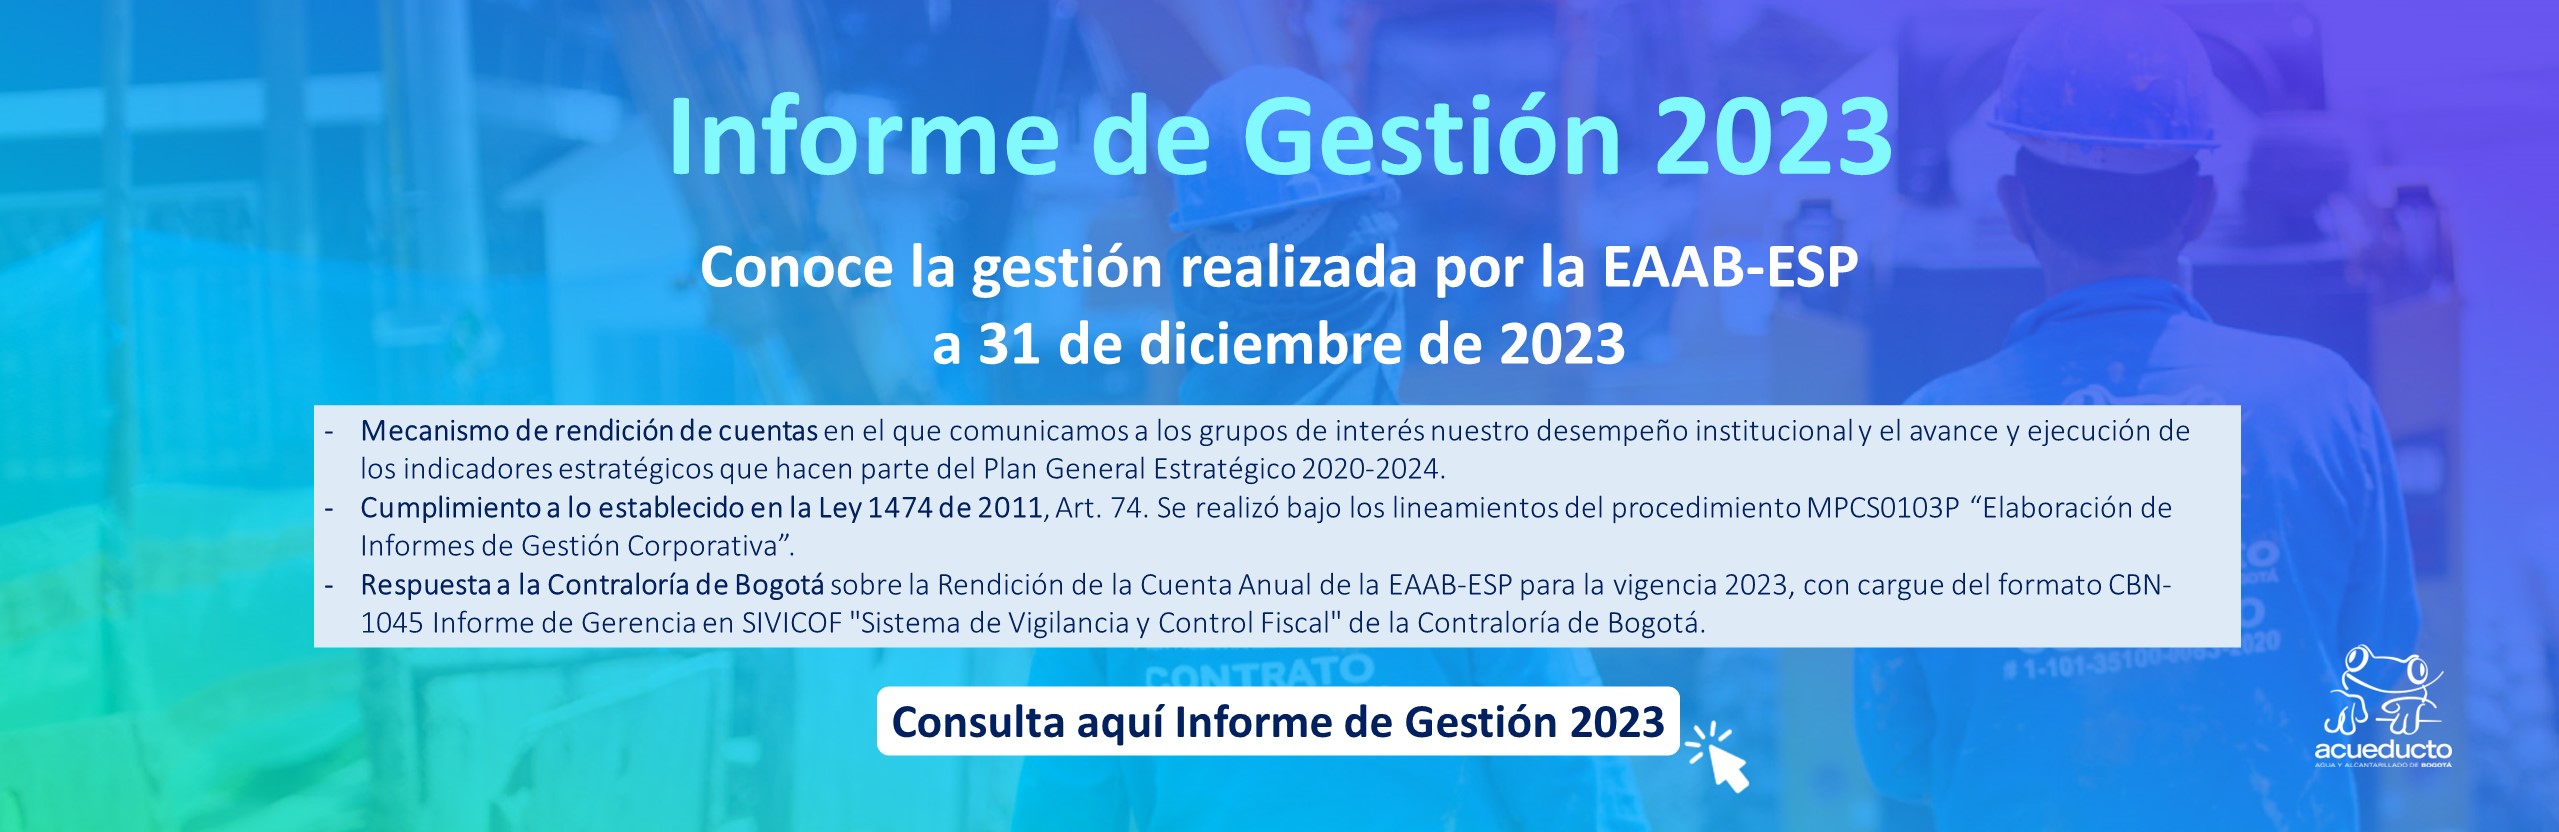 Informe Gestión 2023 EAAB - ESP